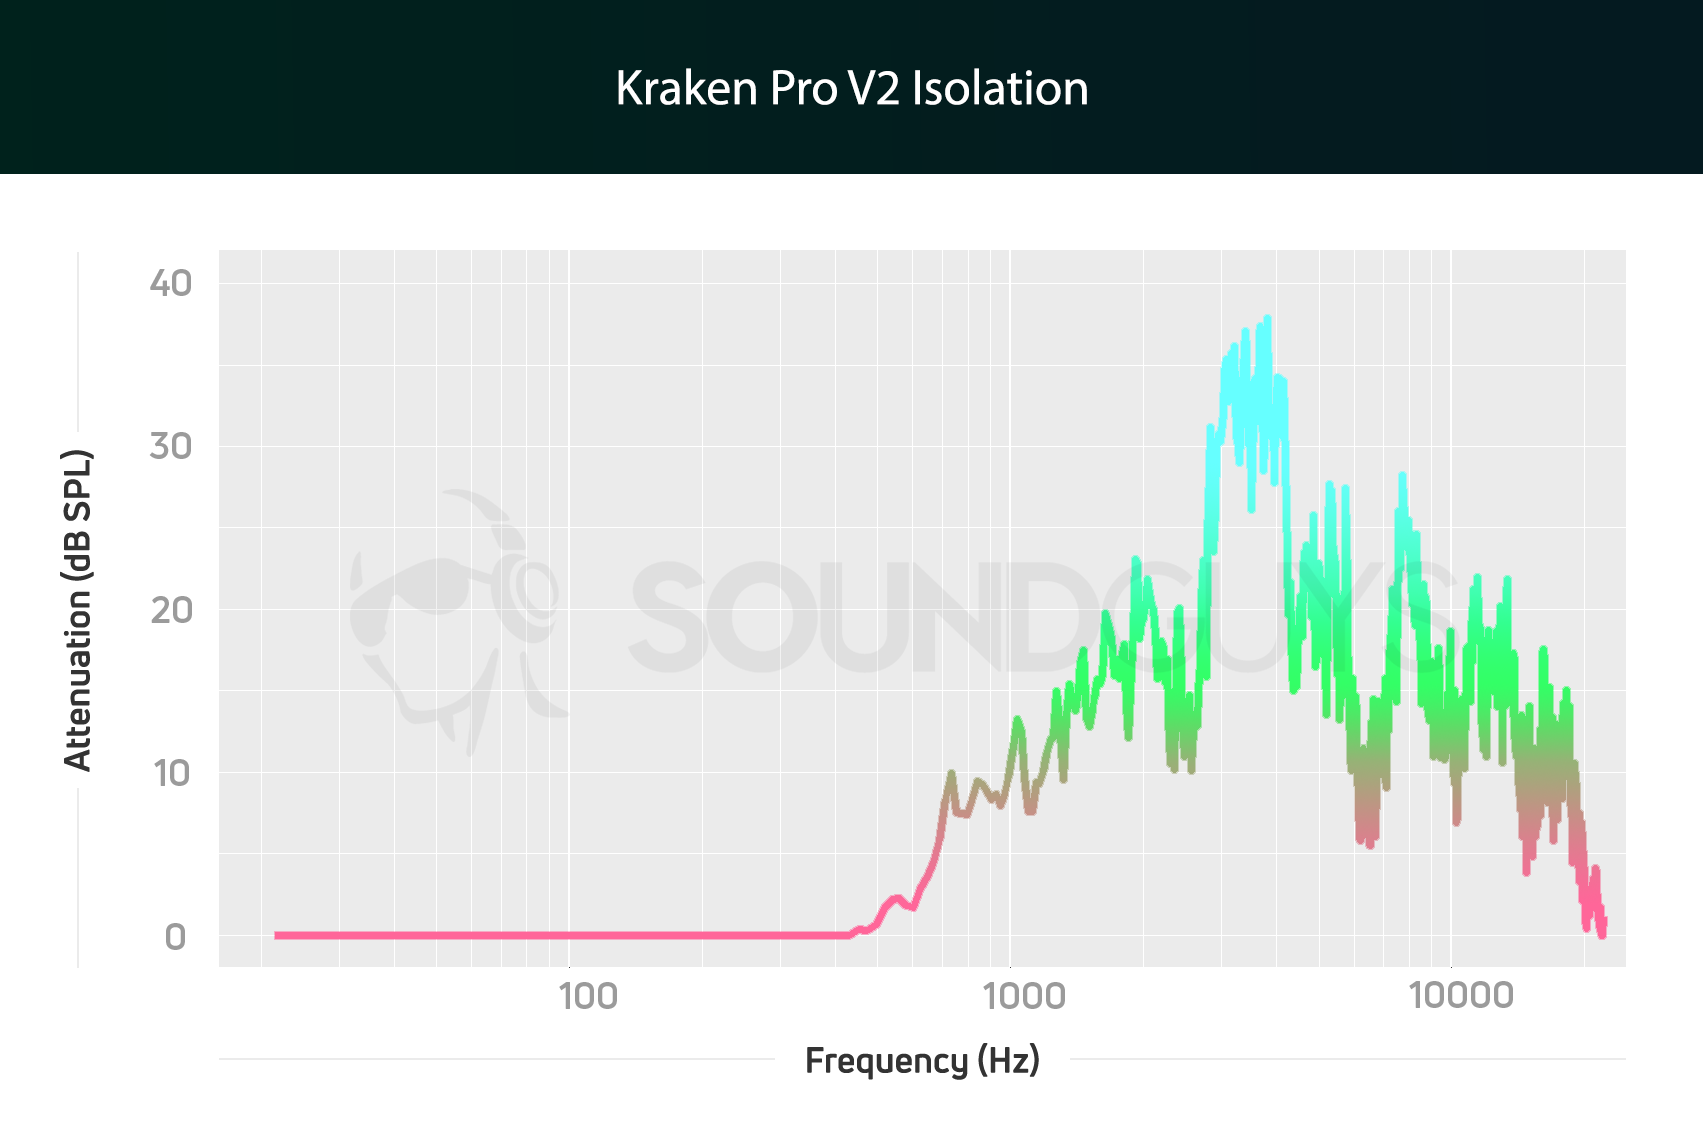 Razer Kraken 7.1 V2 review - SoundGuys